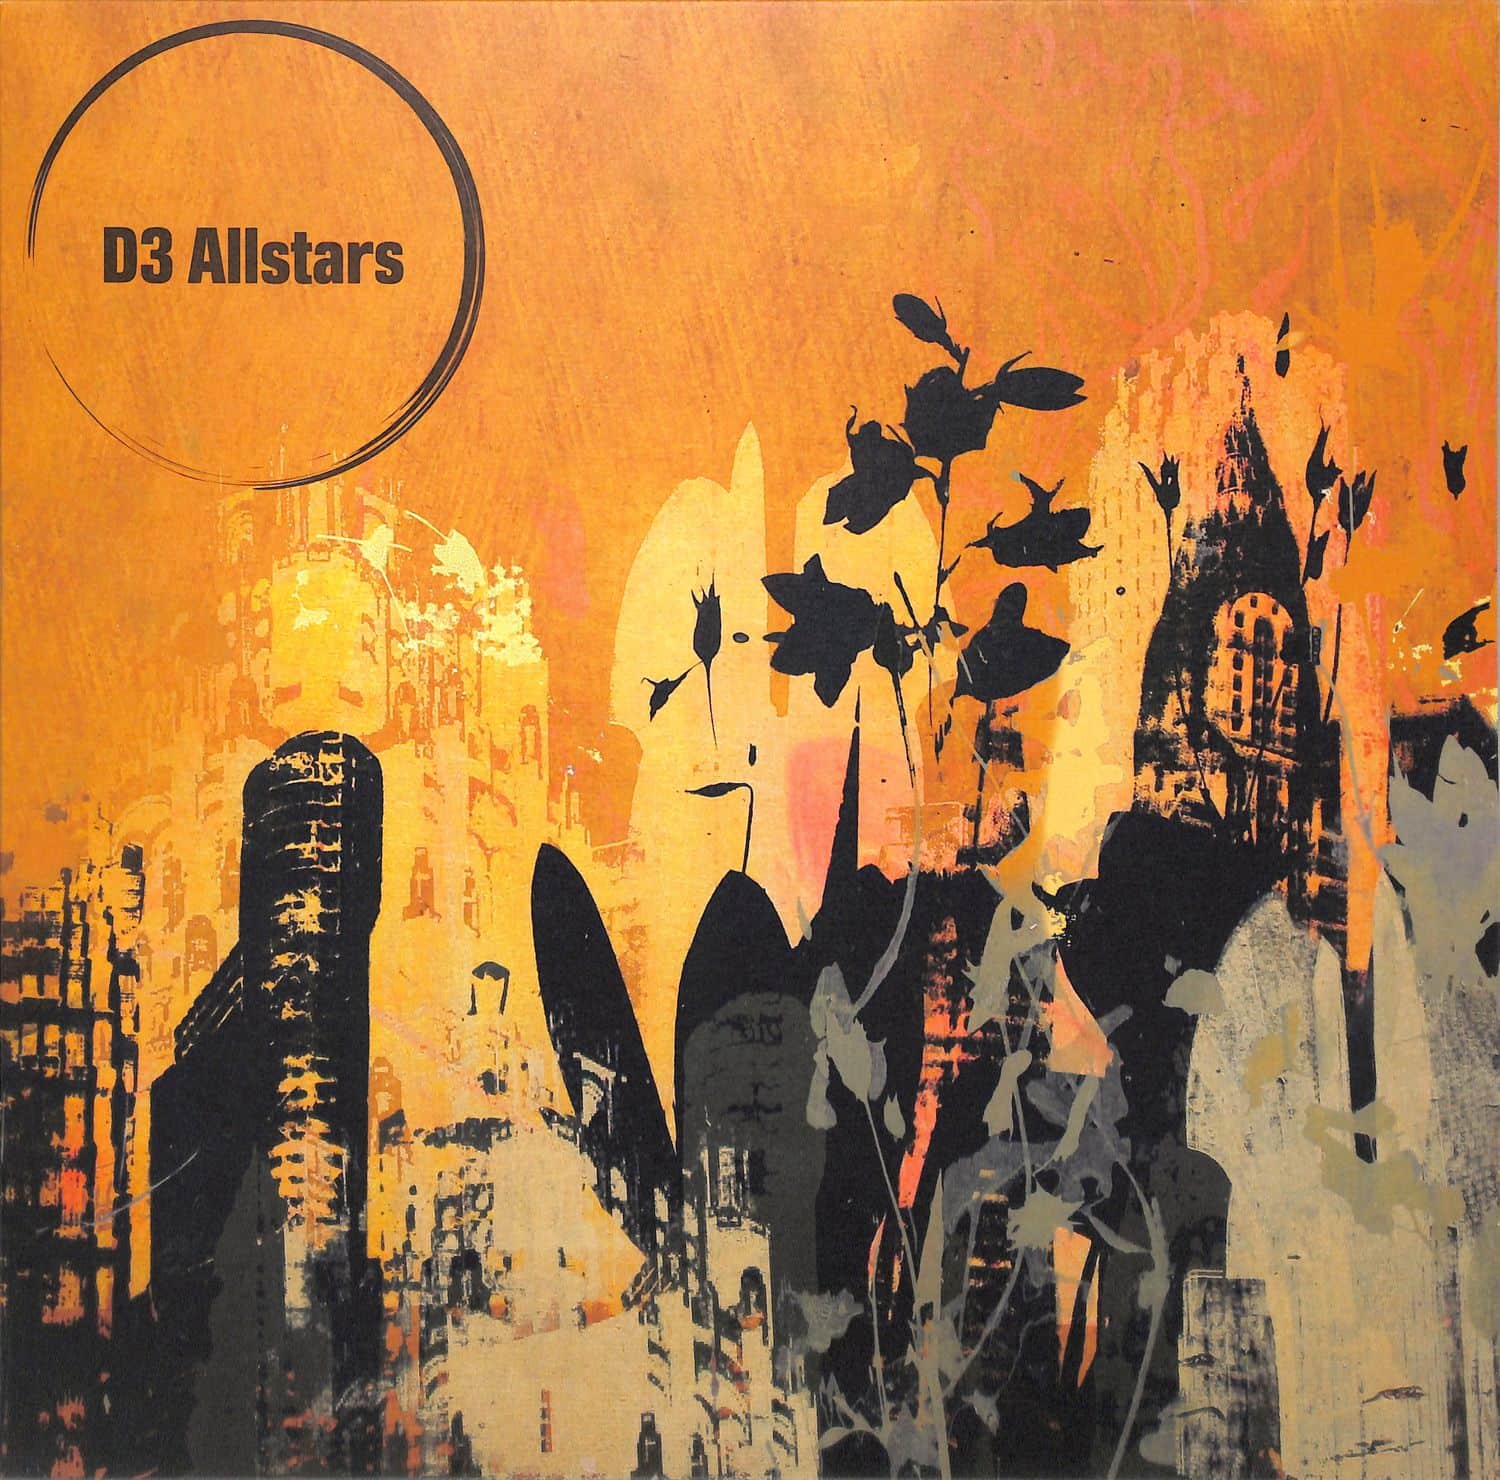 D3 Allstars - Sunday Dub EP